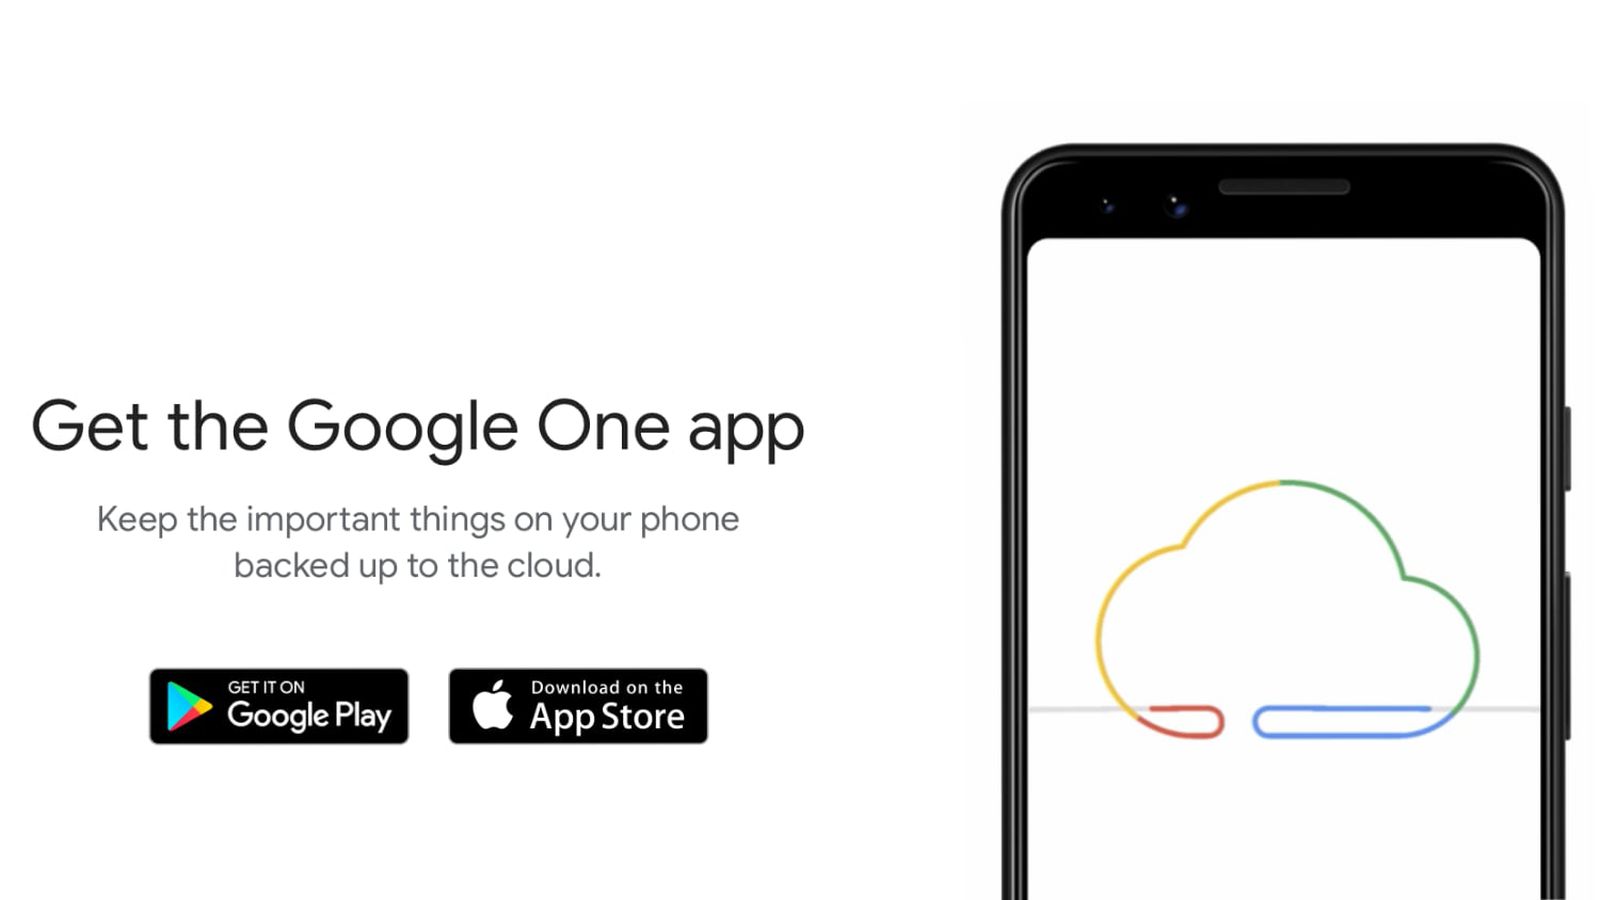 Google One desaparece de la App Store un día después del lanzamiento de VPN [Update: Google One is Back in the App Store]